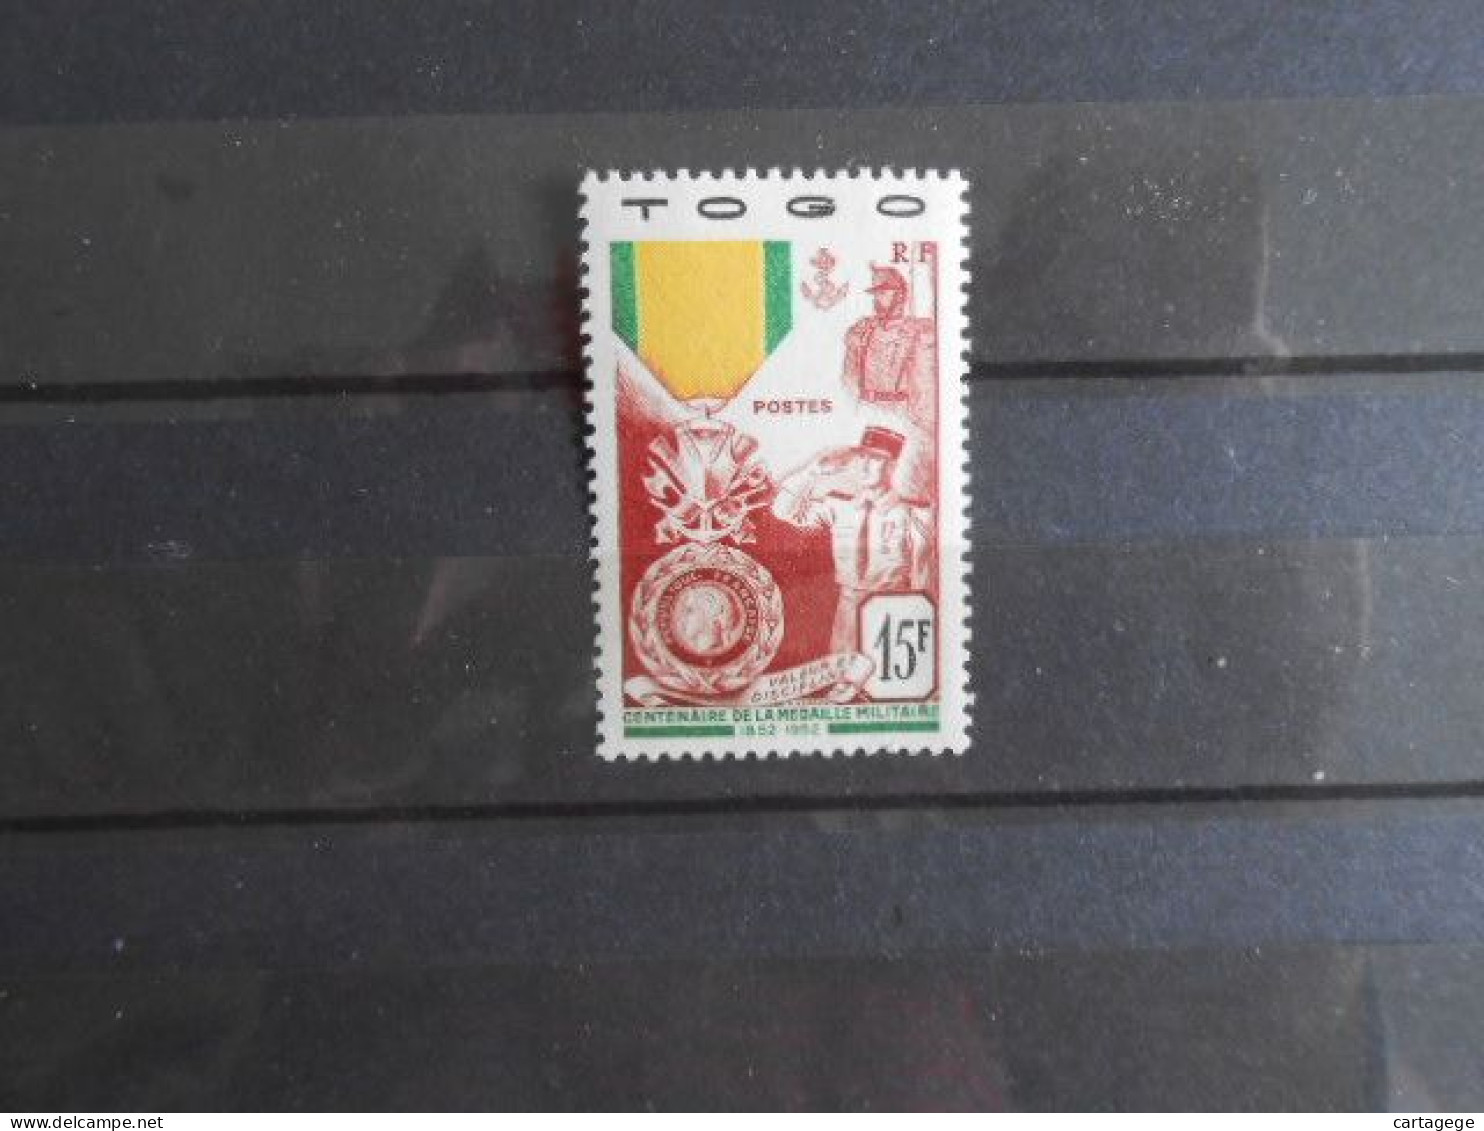 TOGO YT 255 CENTENAIRE DE LA MEDAILLE MILITAIRE* - Unused Stamps